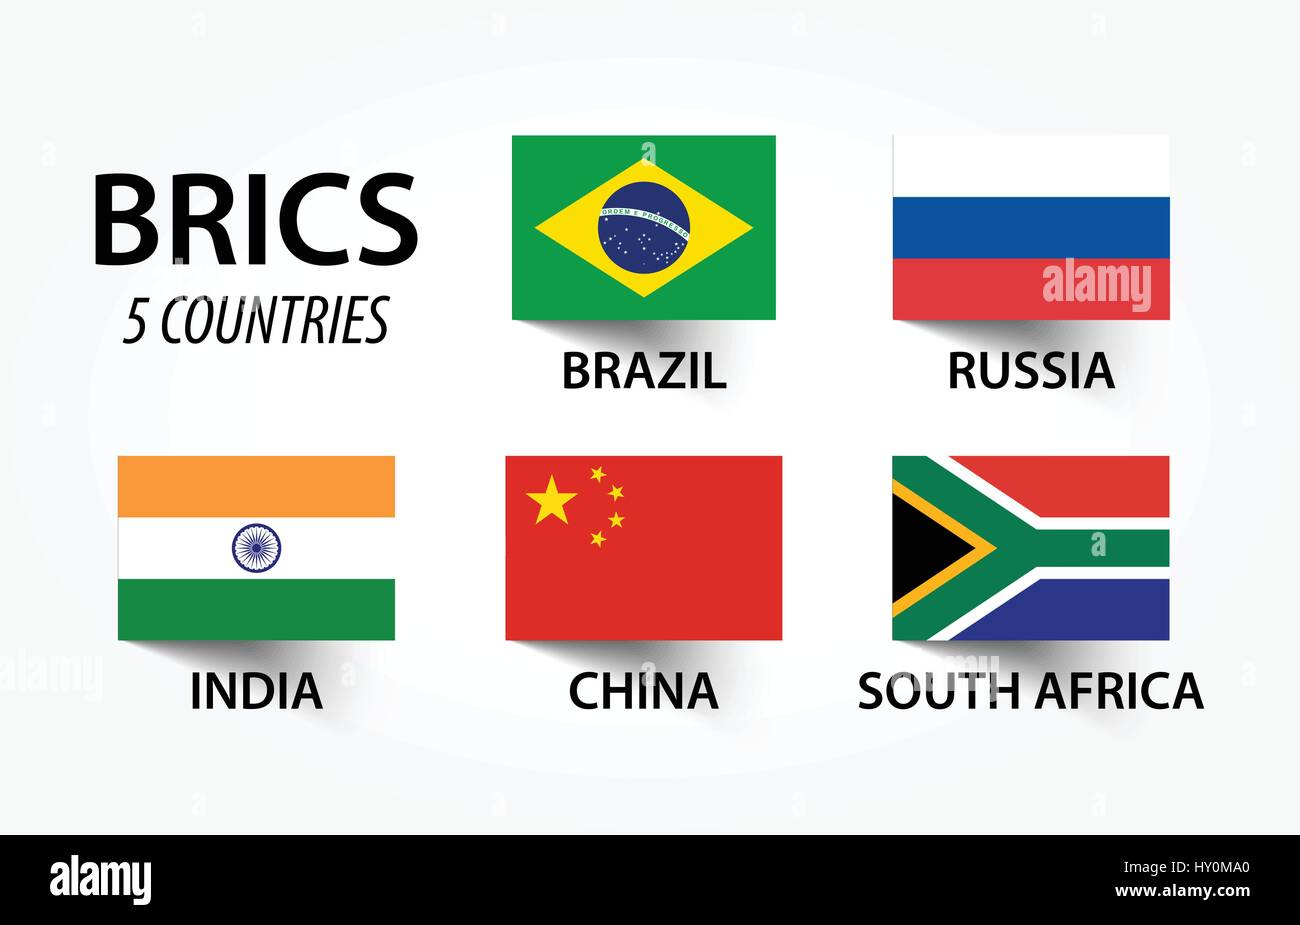 BRICS. Vereinigung von 5 Ländern (Brasilien, Russland, Indien, China, Südafrika) Stock Vektor